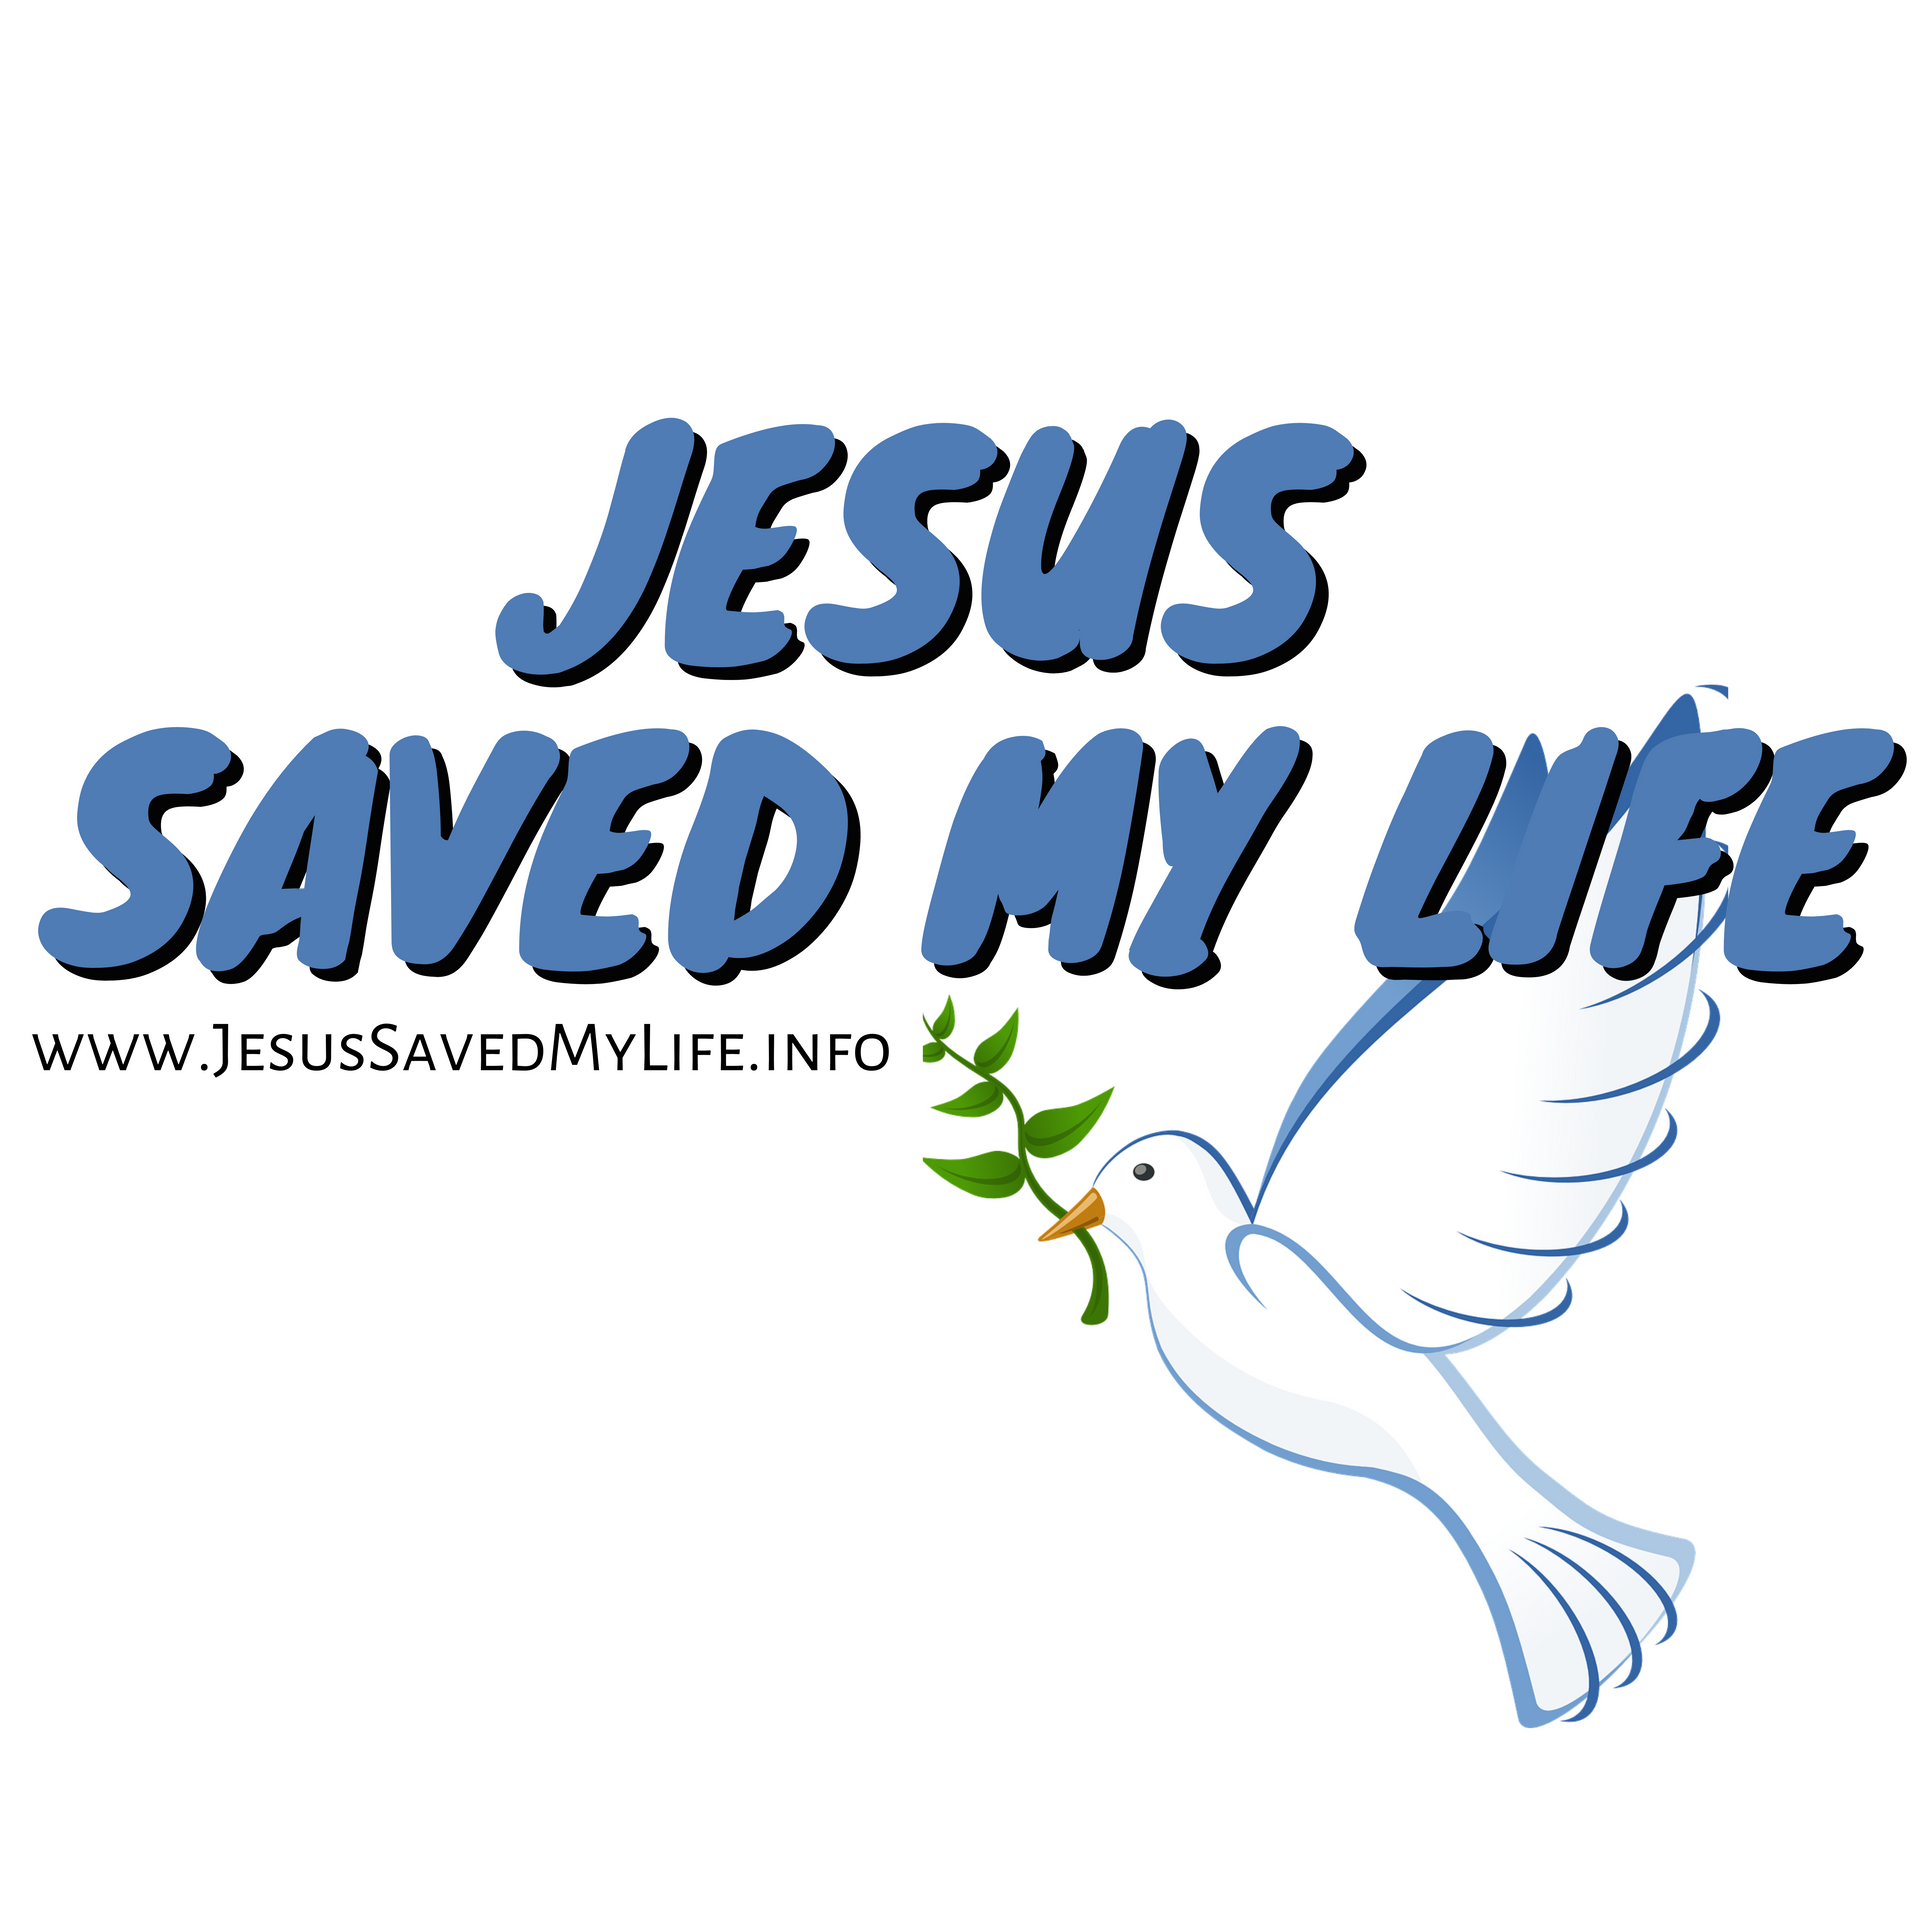 Gott tut auch heute noch Wunder #JesusSavedMyLife